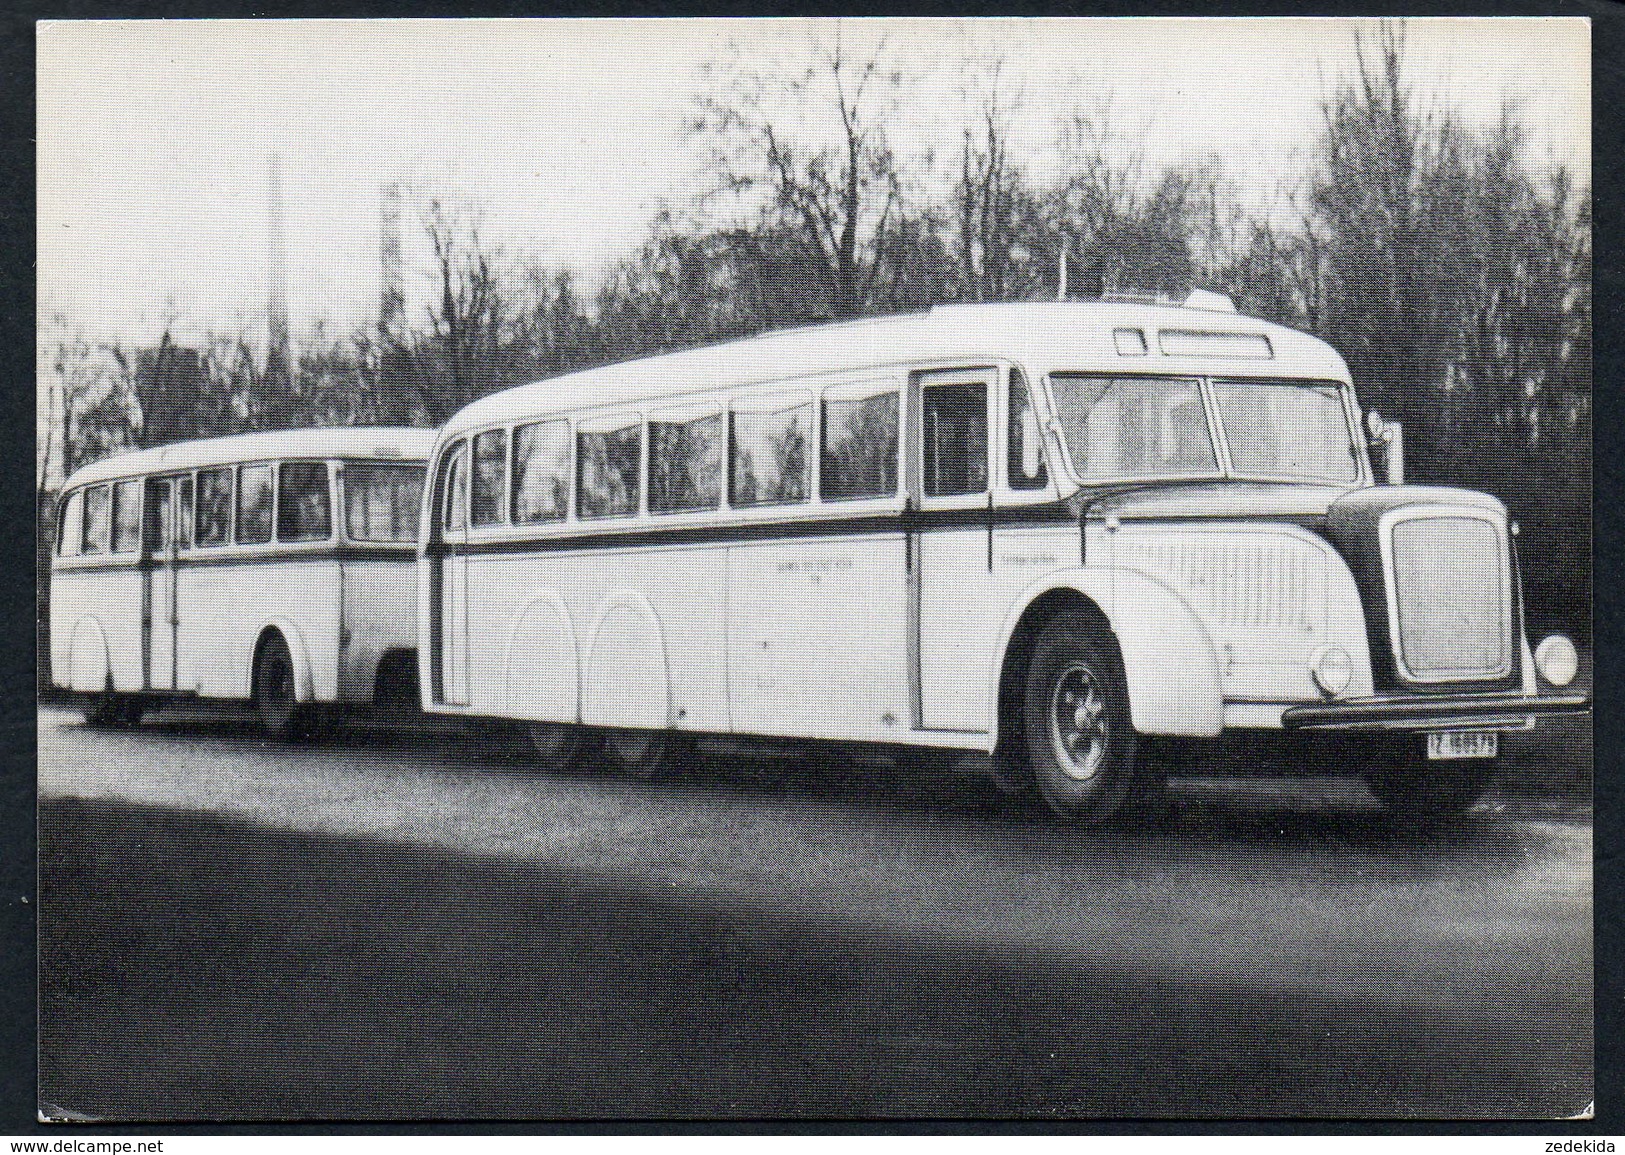 A5838 - Alte Ansichtskarte - Bus Omnibus Kraftverkehr - Kölner Verkehersbetriebe - Dreiachser - TOP - Buses & Coaches